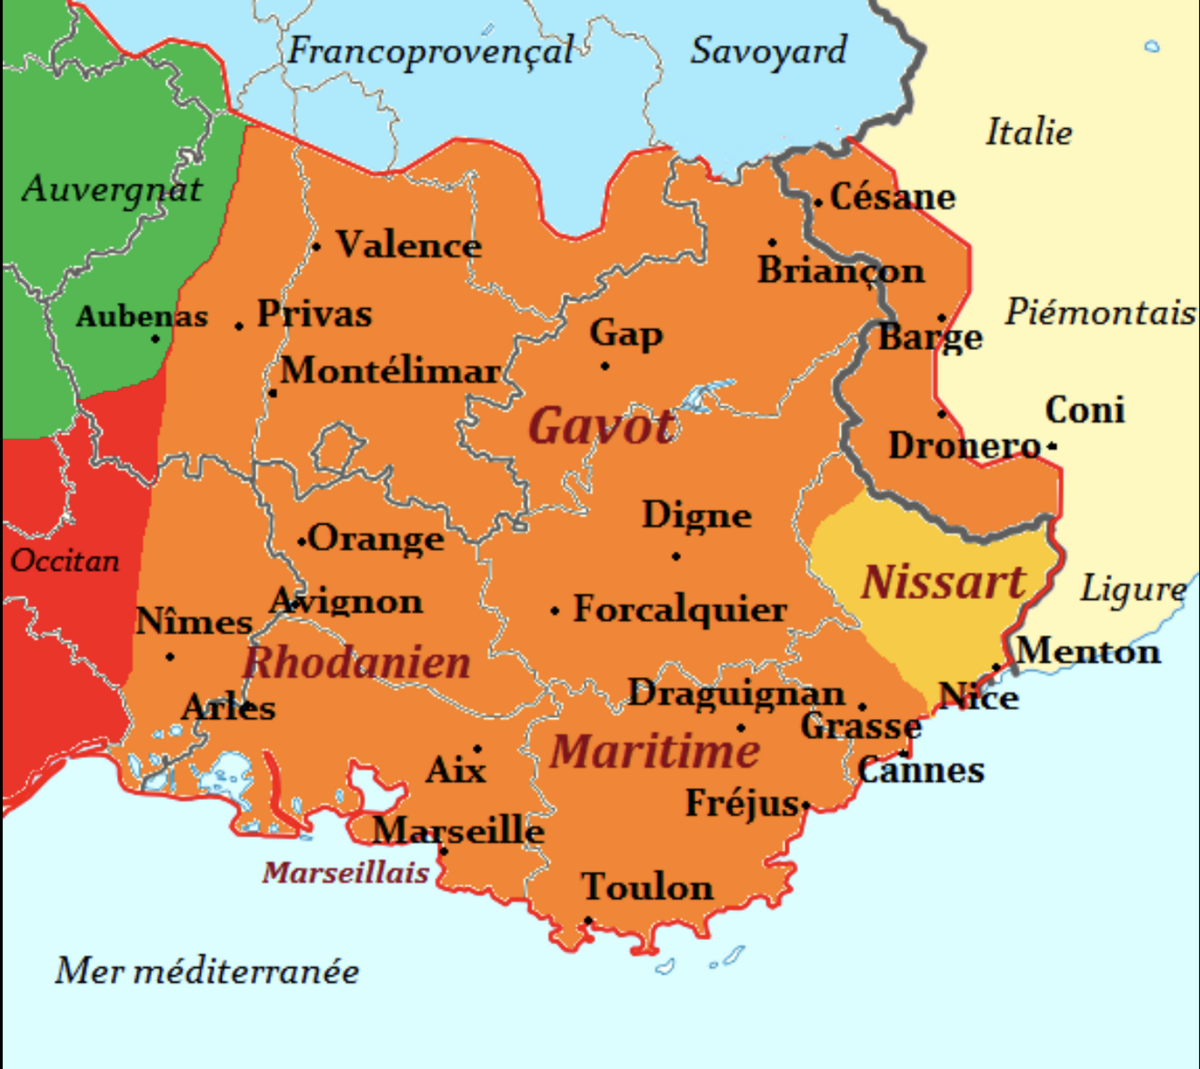 Kort over udbredelse af provençalsk